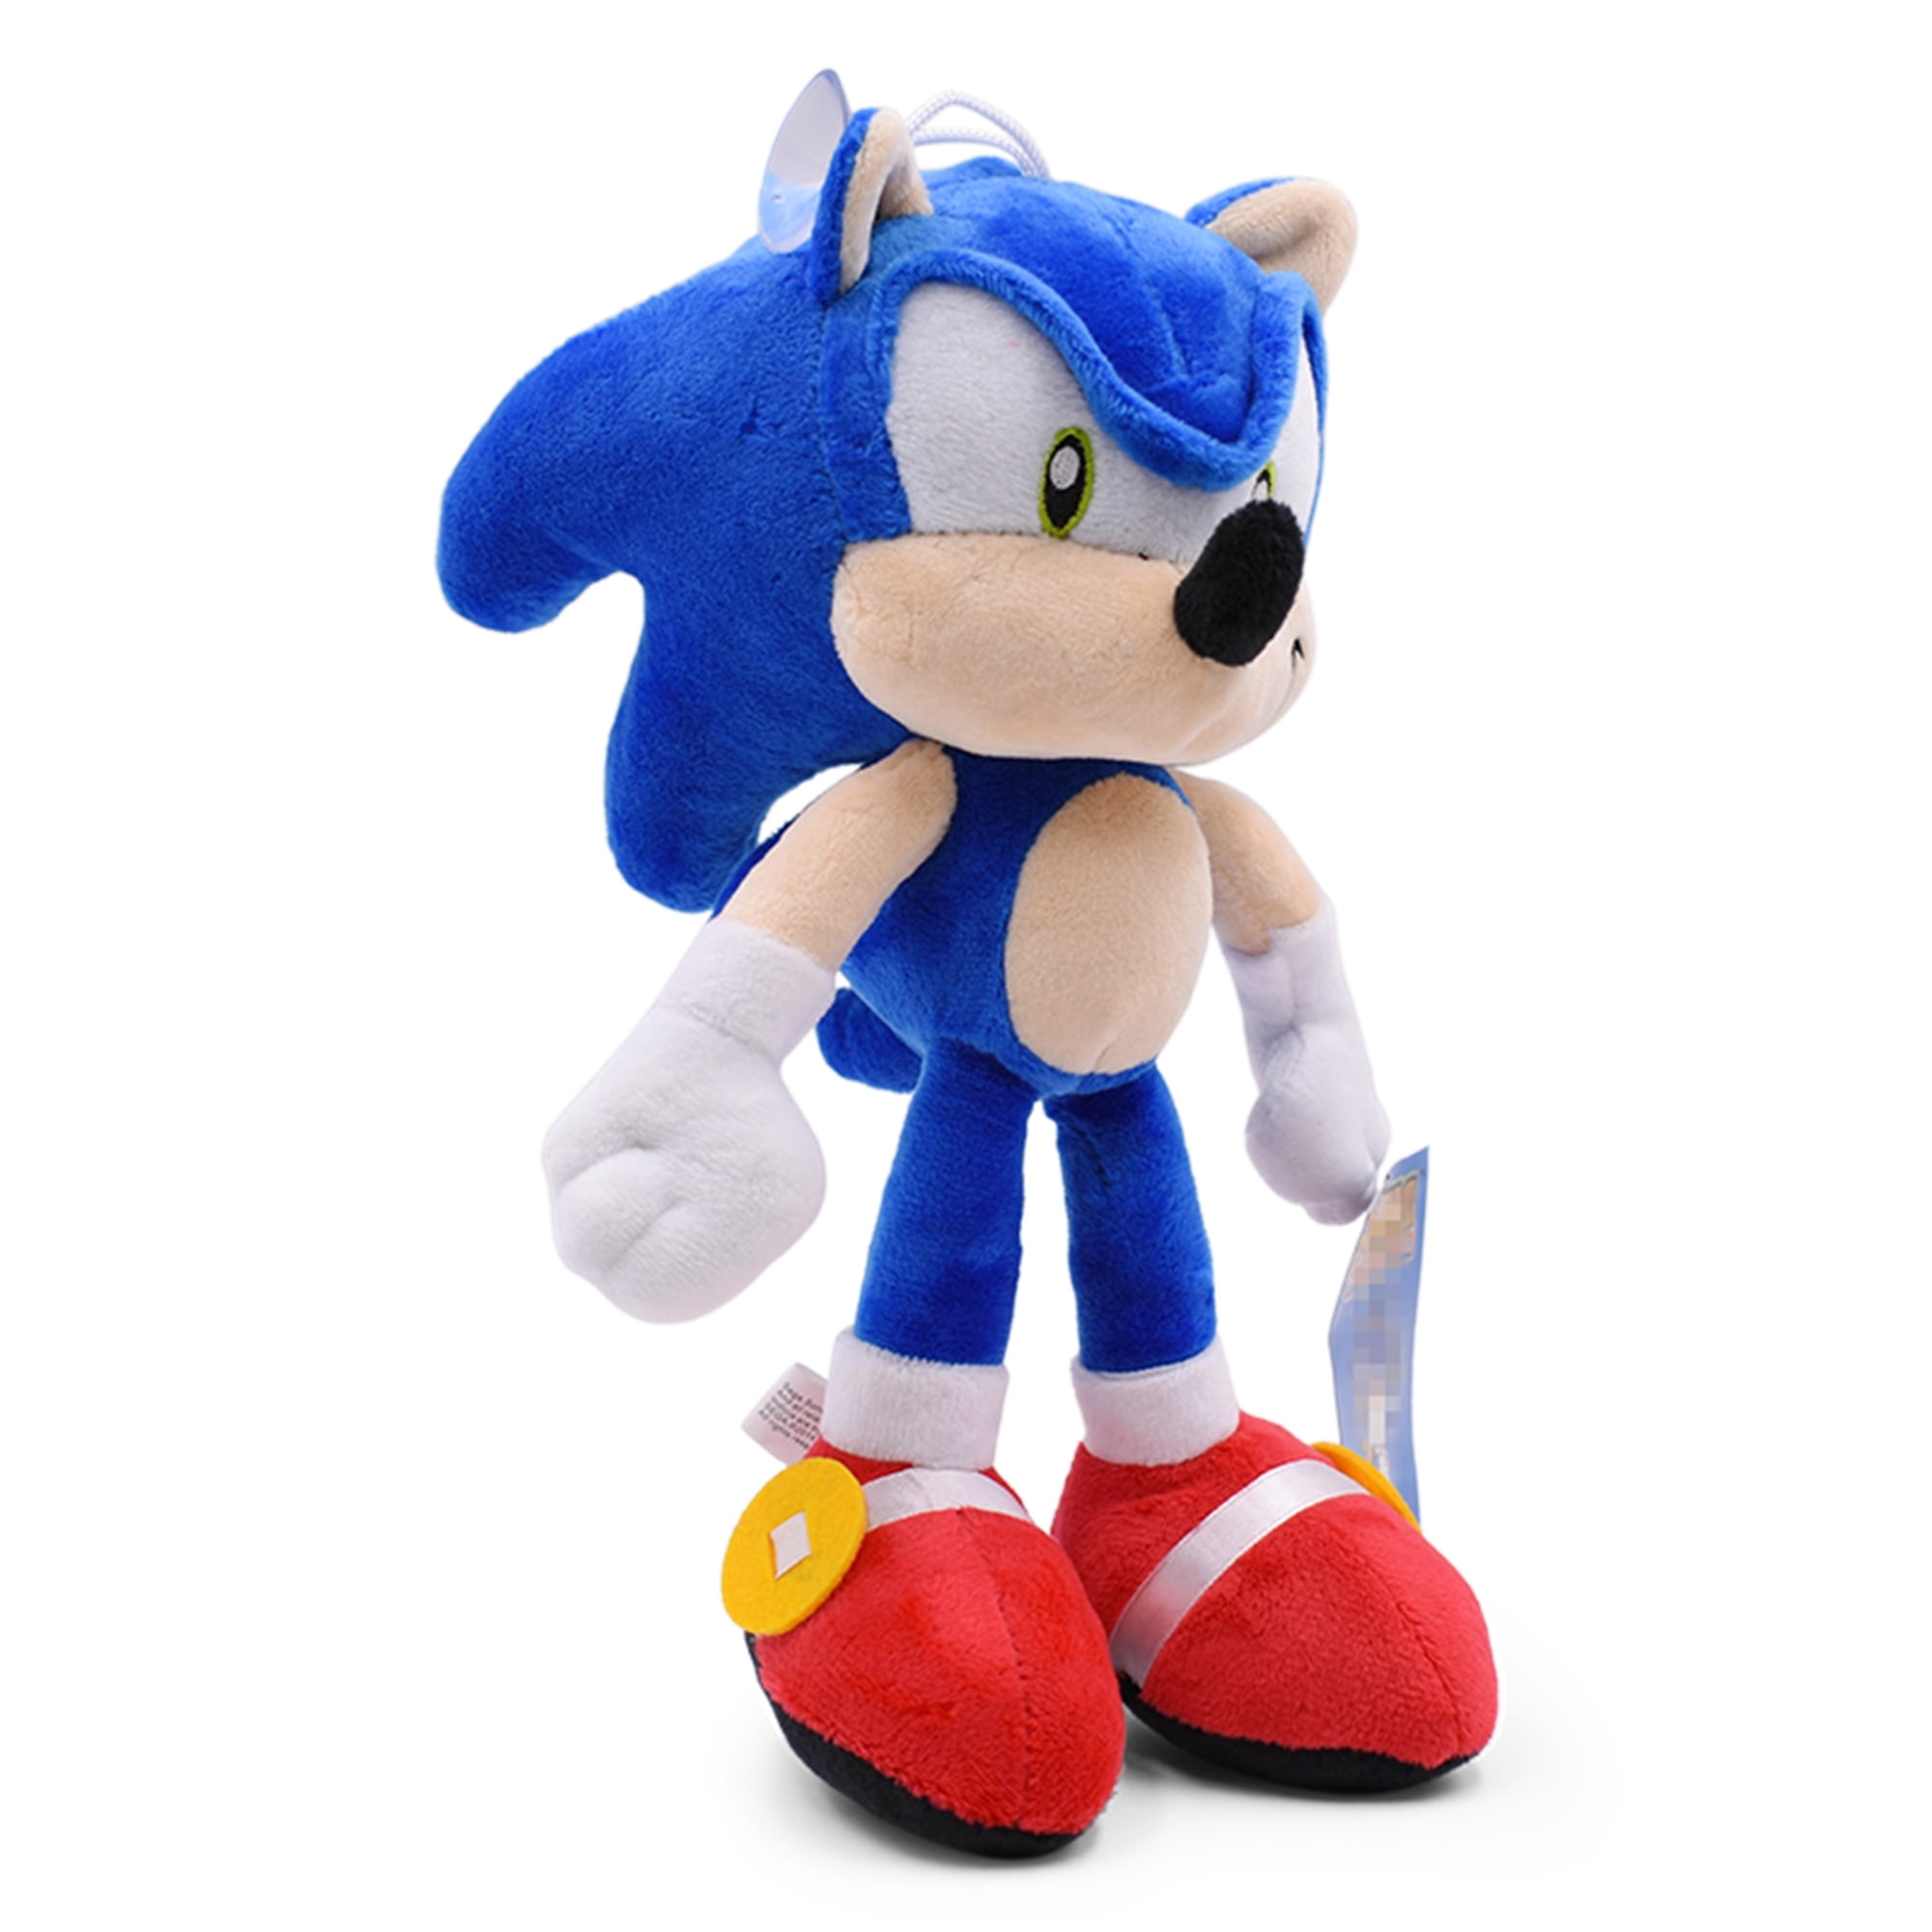 Sonic the Hedgehog Plush Soft Toy Doll Stuffed Animal Teddy 11"